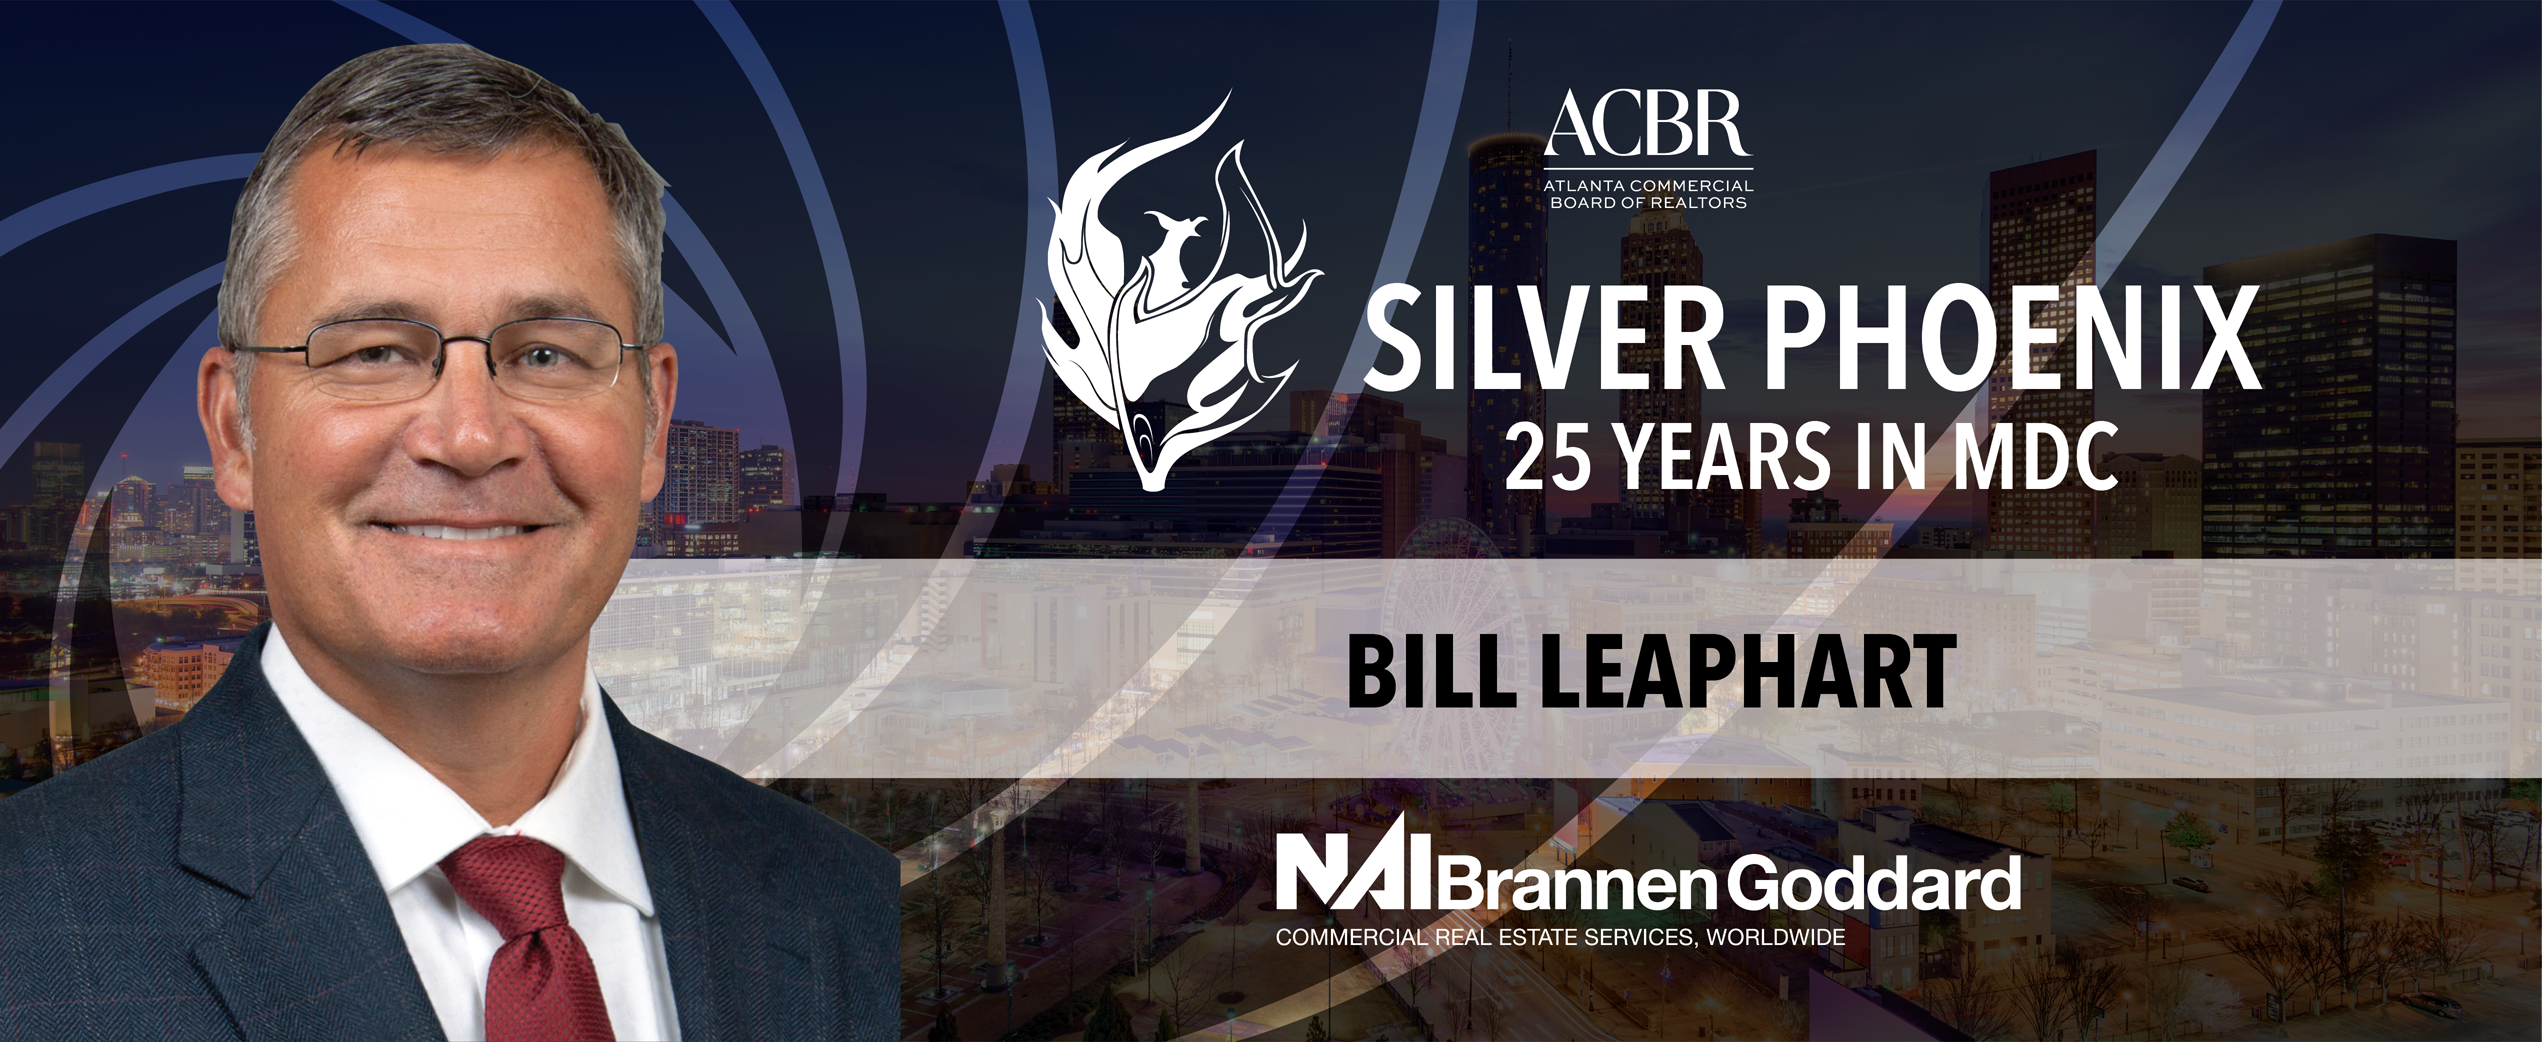 Bill Leaphart awarded Silver Phoenix